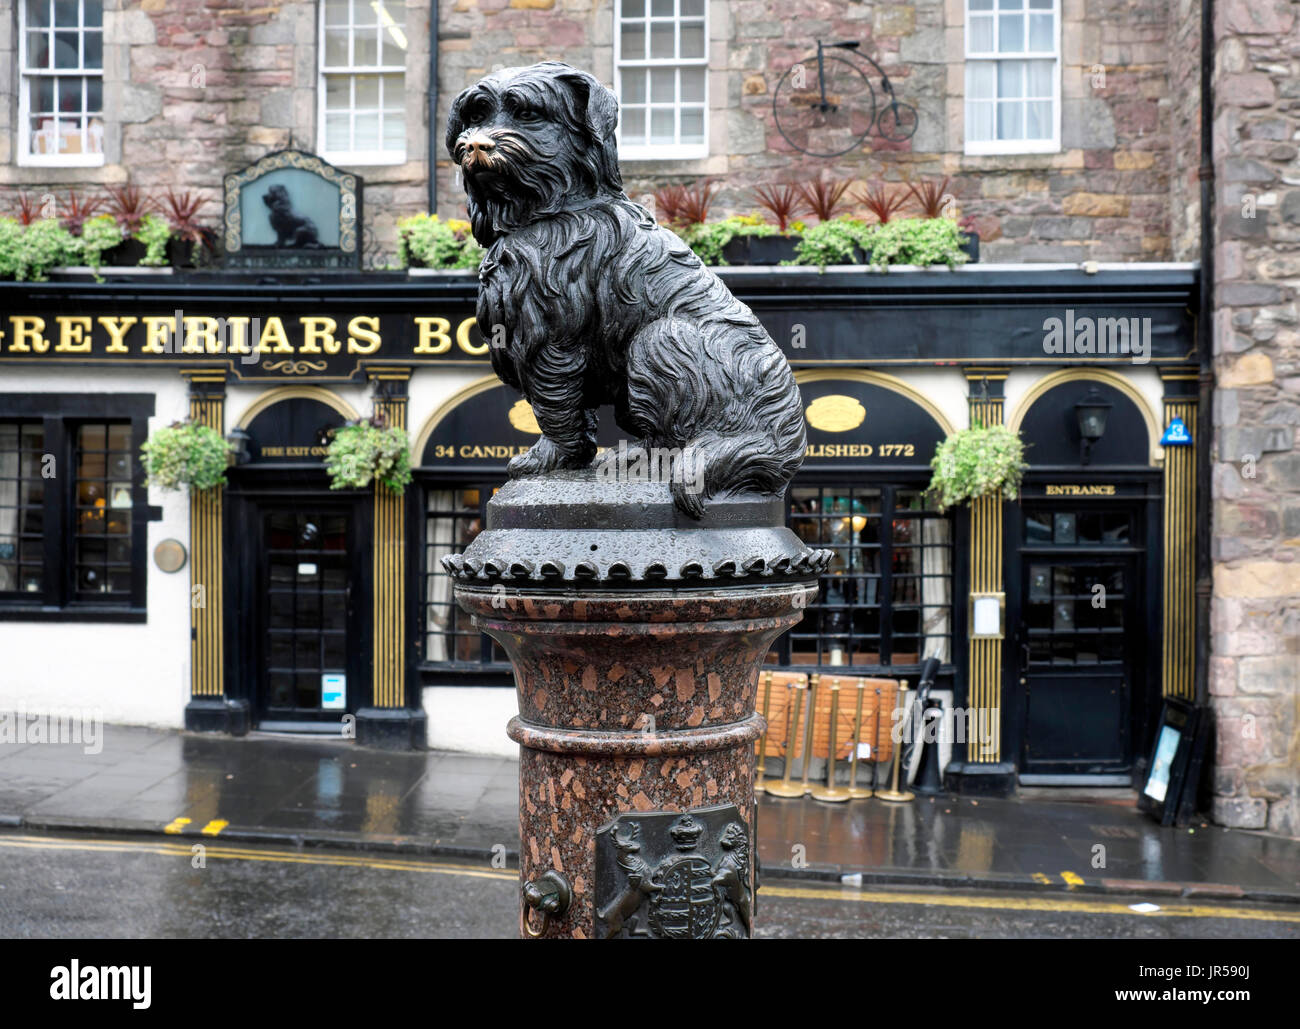 Greyfriars Bobby, Hund Statue, Edinburgh, Schottland, Vereinigtes  Königreich Stockfotografie - Alamy